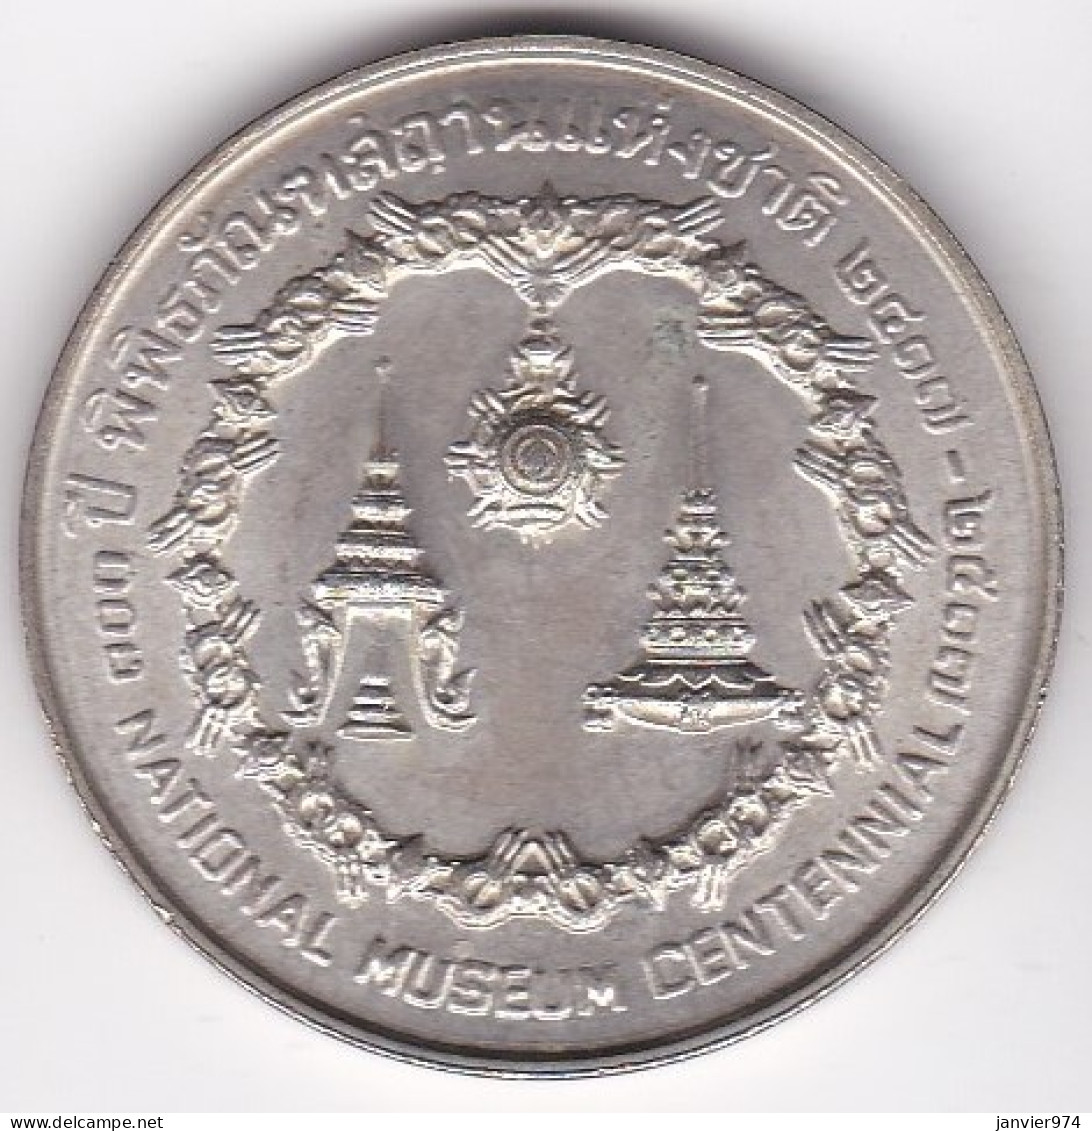 Thaïlande 50 Baht BE 2517 – 1974, Centenaire Du Musée National, En Argent , Y# 101 - Thaïlande